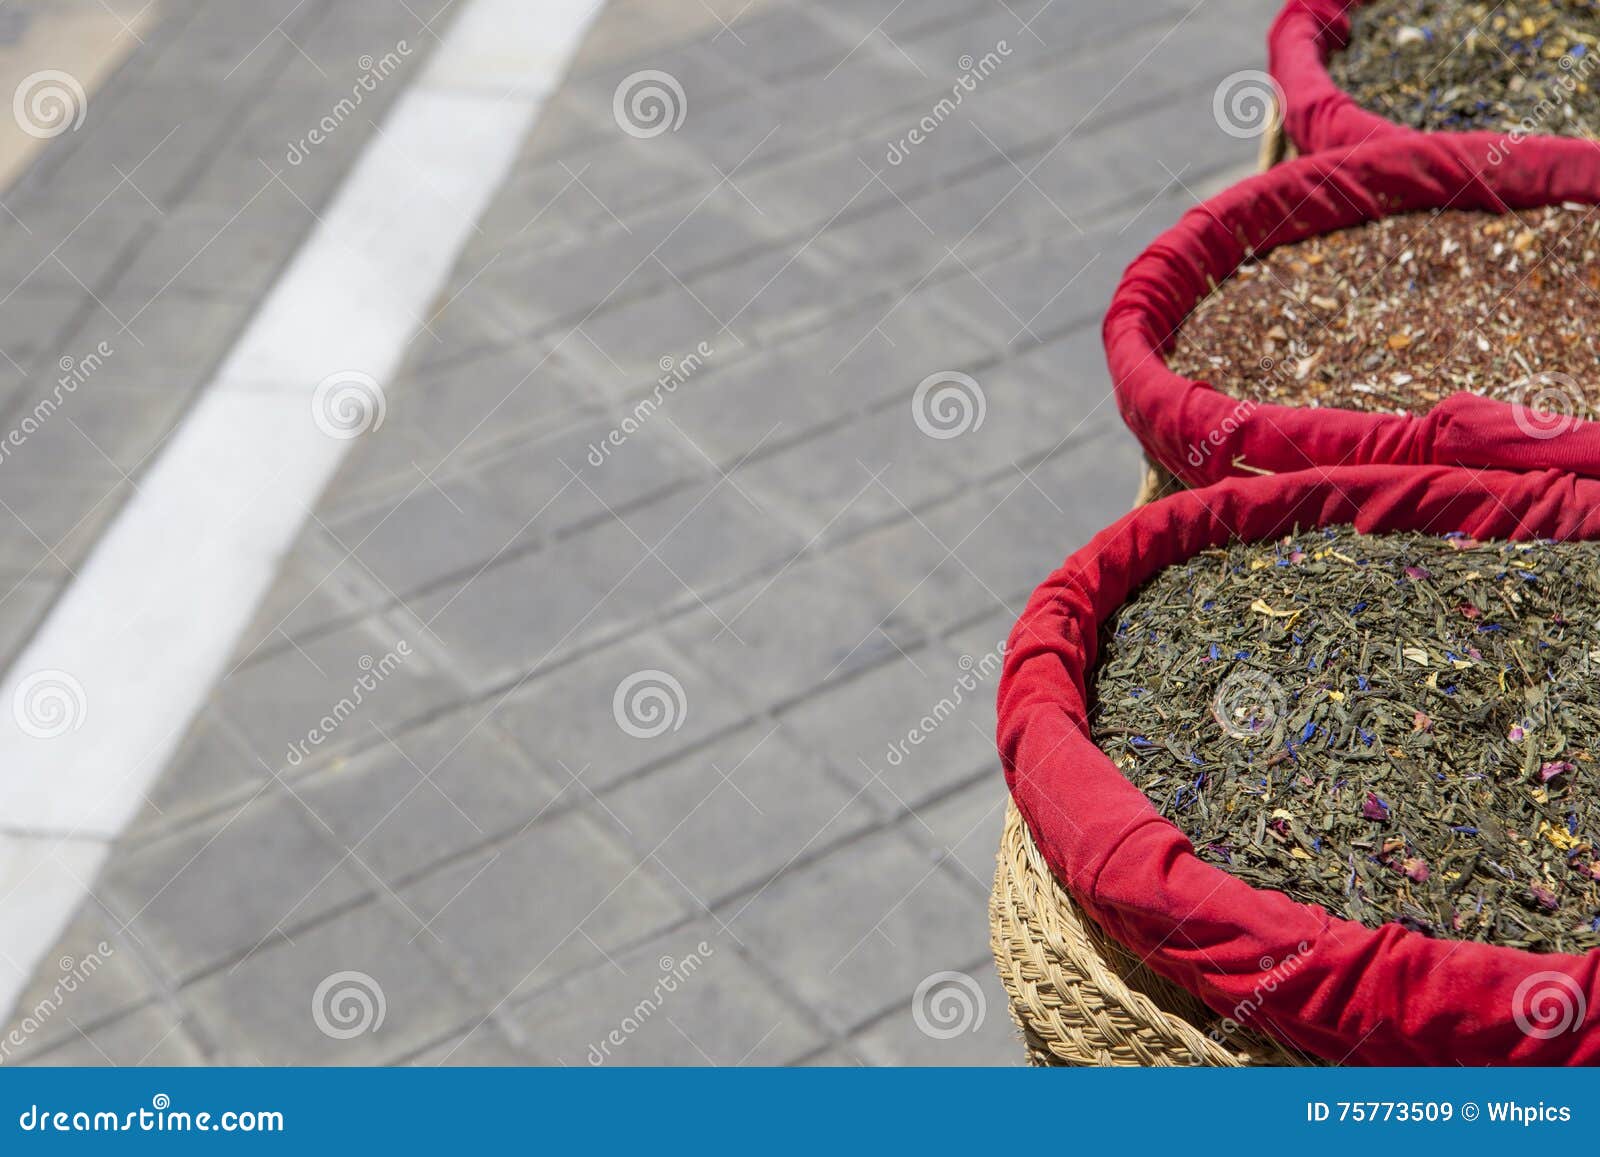 As especiarias, as sementes e o chá venderam em um mercado de rua tradicional, Grana